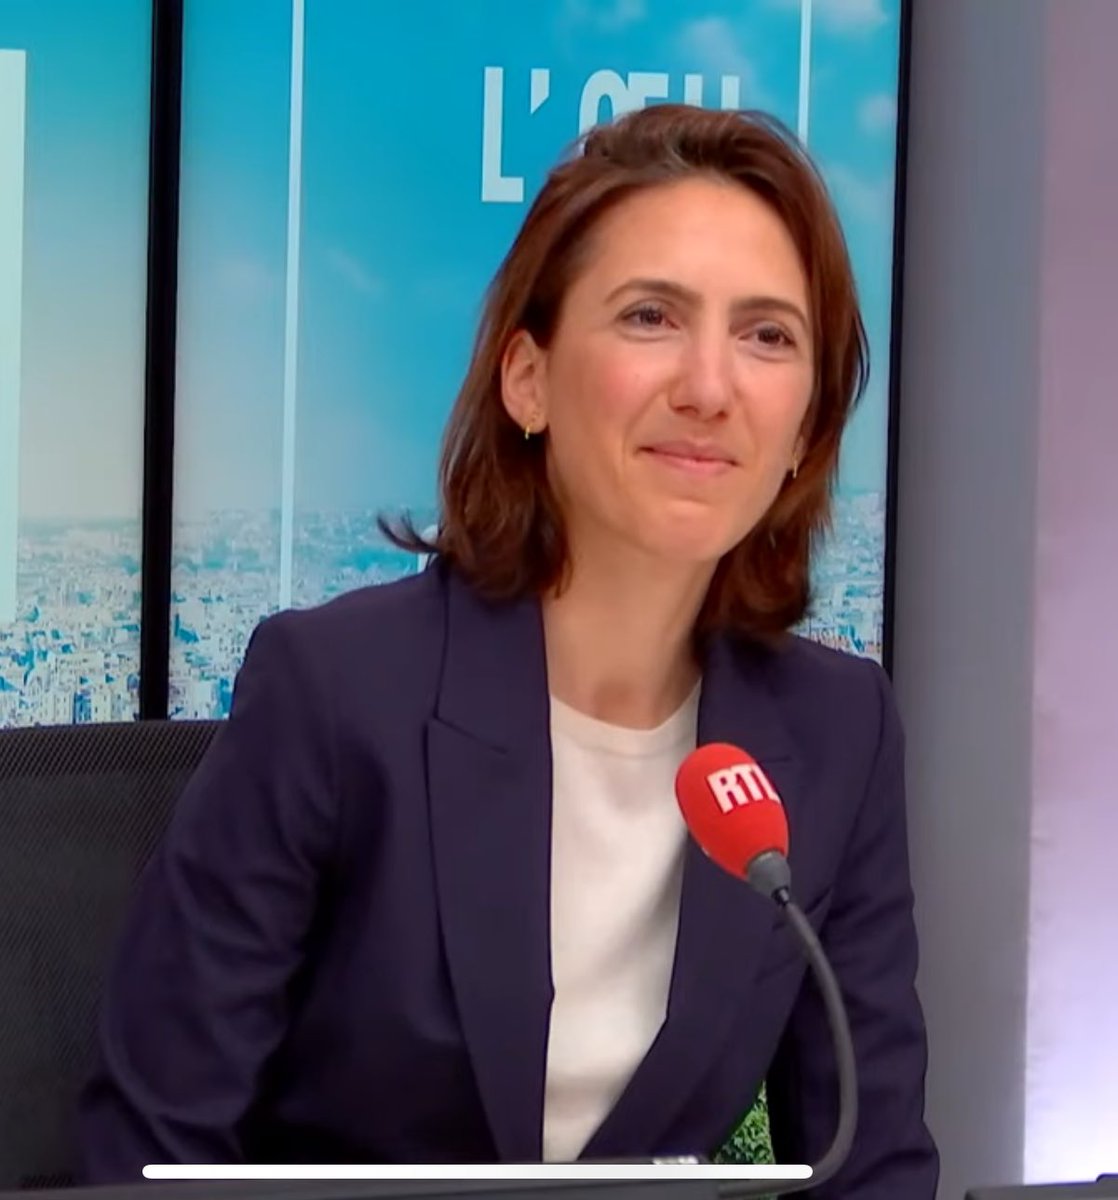 ⚡️🇫🇷CITATION - « J’ai toujours défendu [euh…] combattu l’extrême droite », Valérie #Hayer, tête de liste du parti présidentiel aux européennes, après avoir été prise en photo avec des néonazis. (itw RTL)